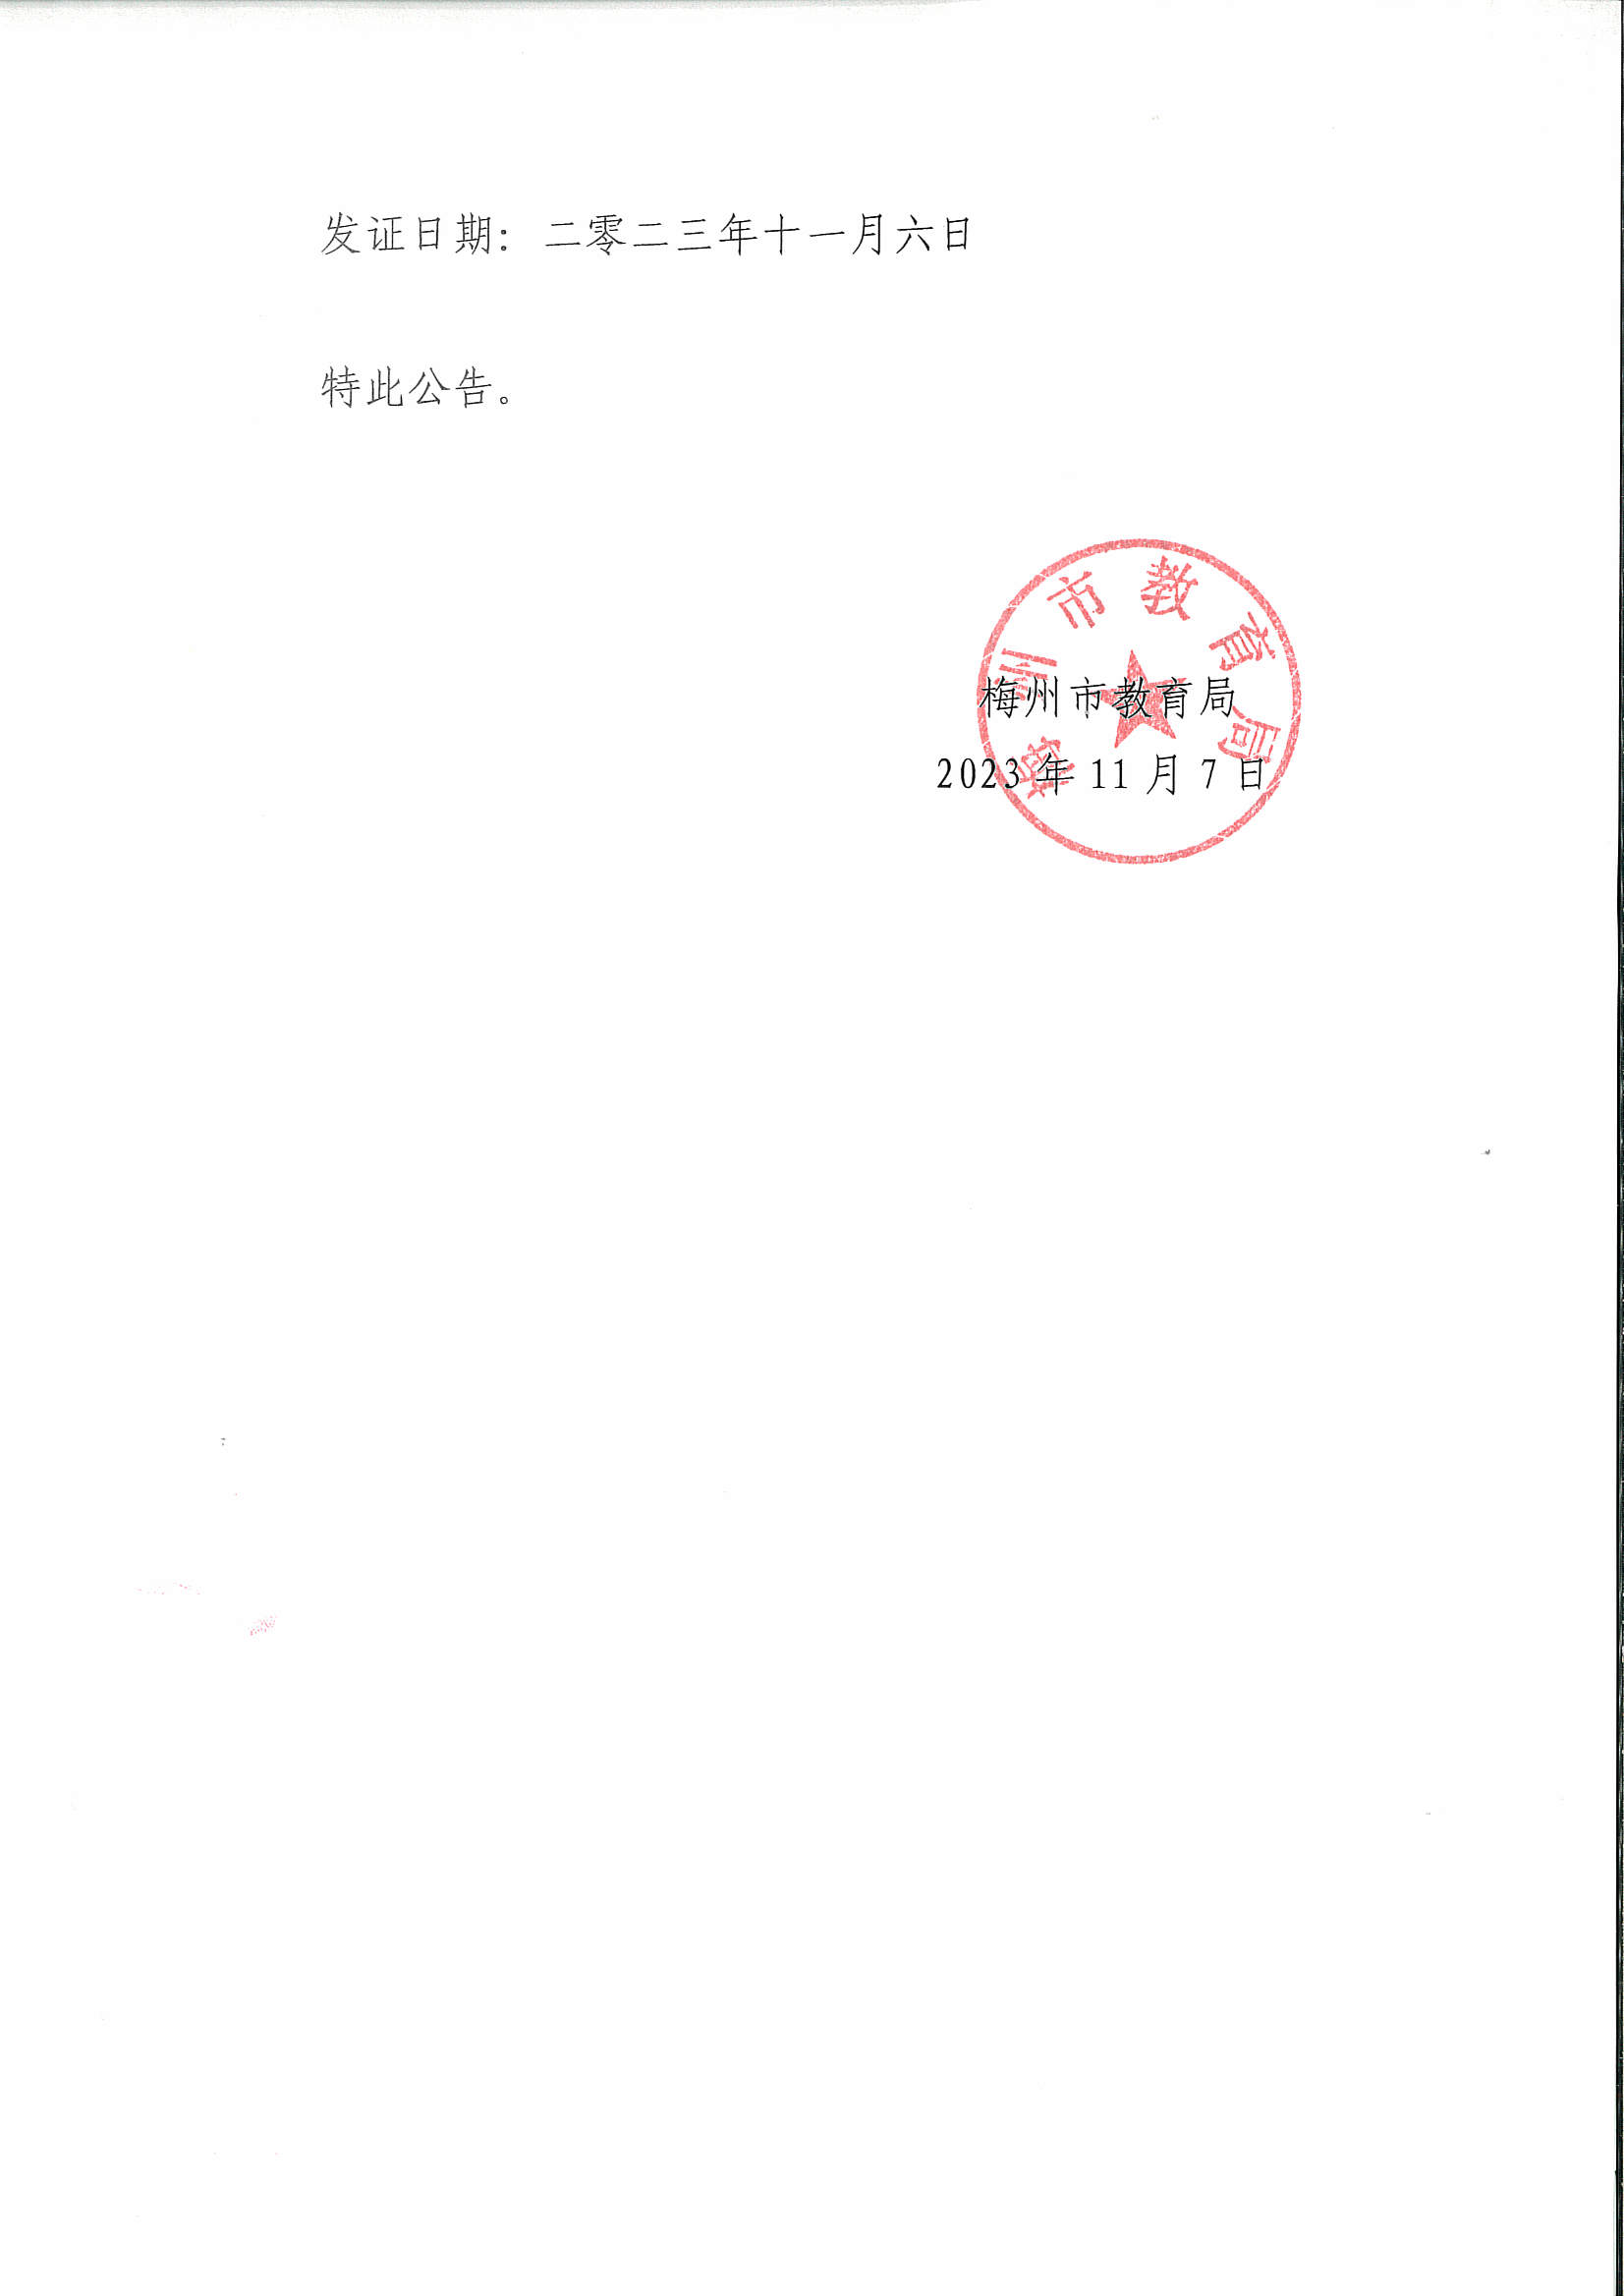 关于梅州市梅铁技术学校更换《中华人民共和国民办学校办学许可证》的公告_页面_2.png